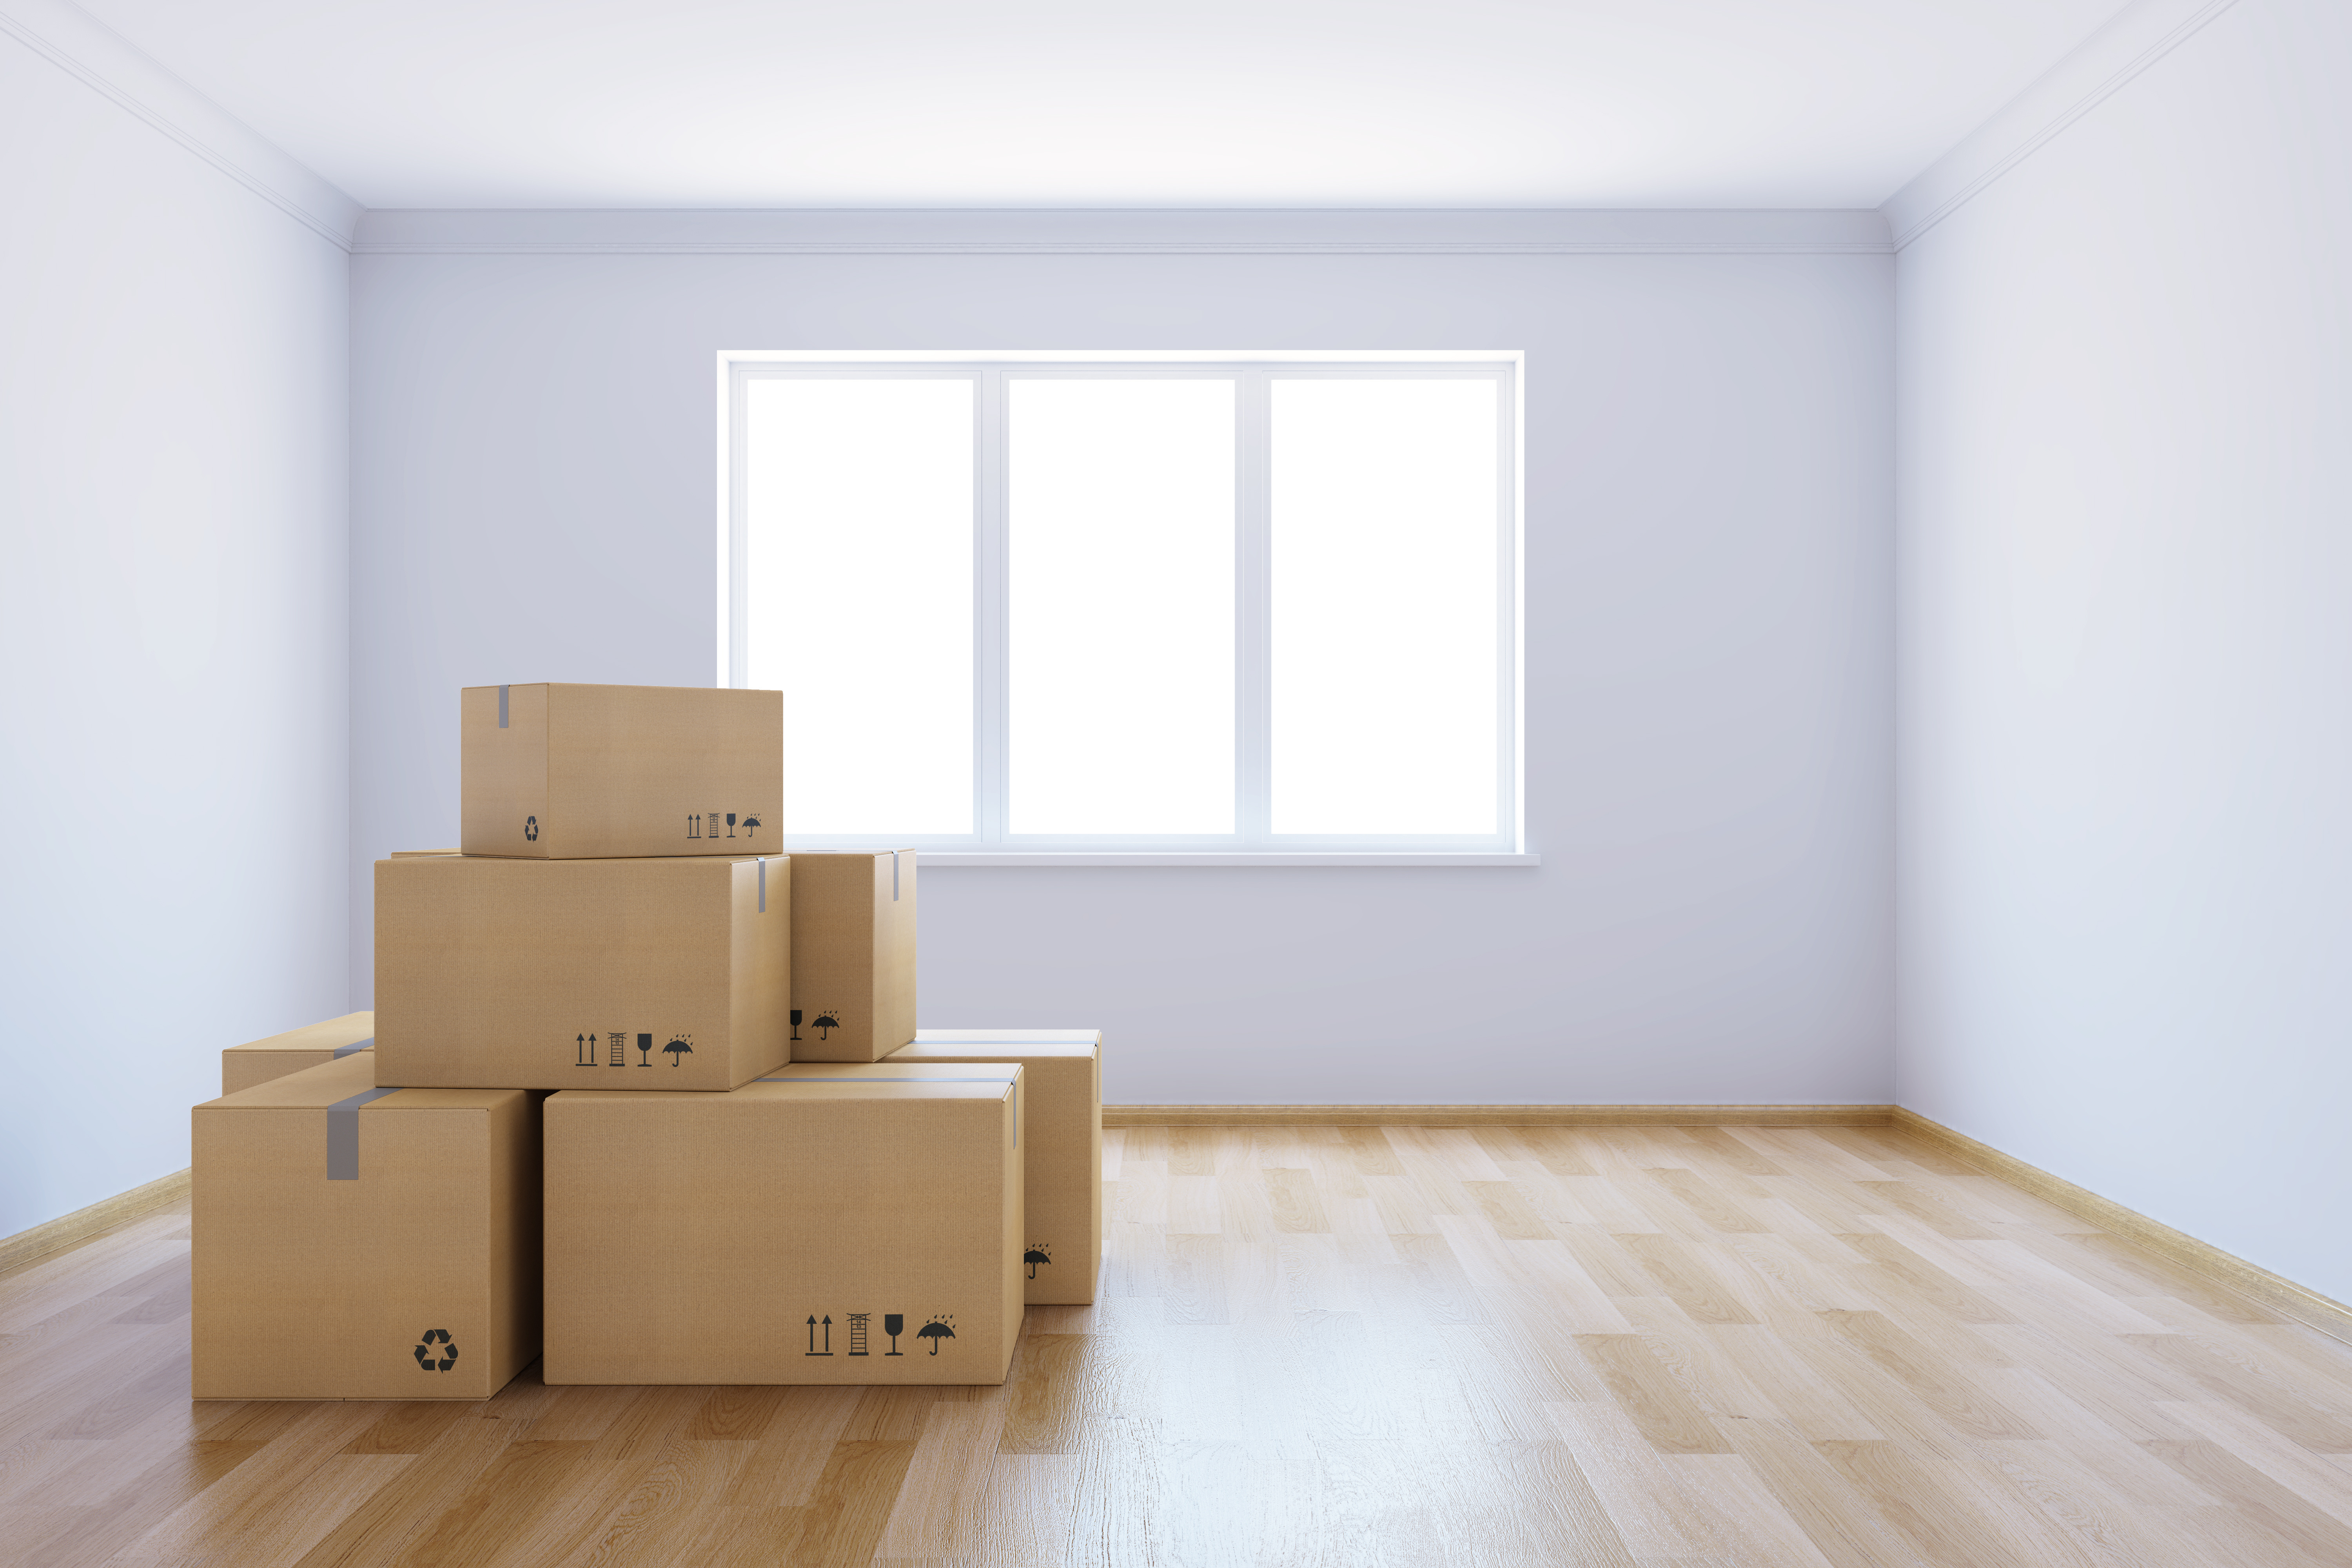 Un salon avec une grande fenêtre est vide à l’exception d’un empilement de boites de déménagement. 